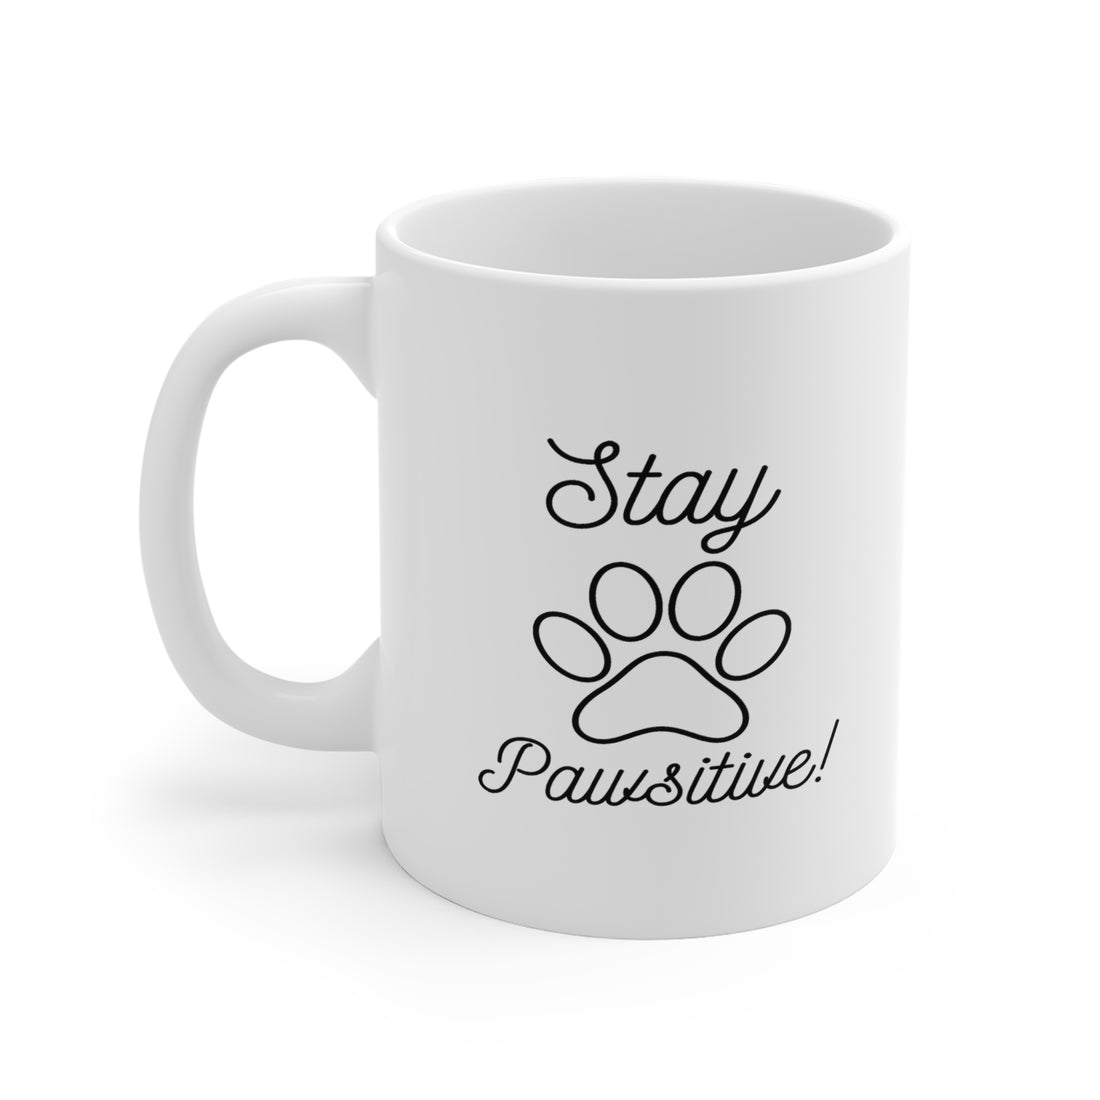 Stay Pawsitive - White Ceramic Mug 2 sizes Available